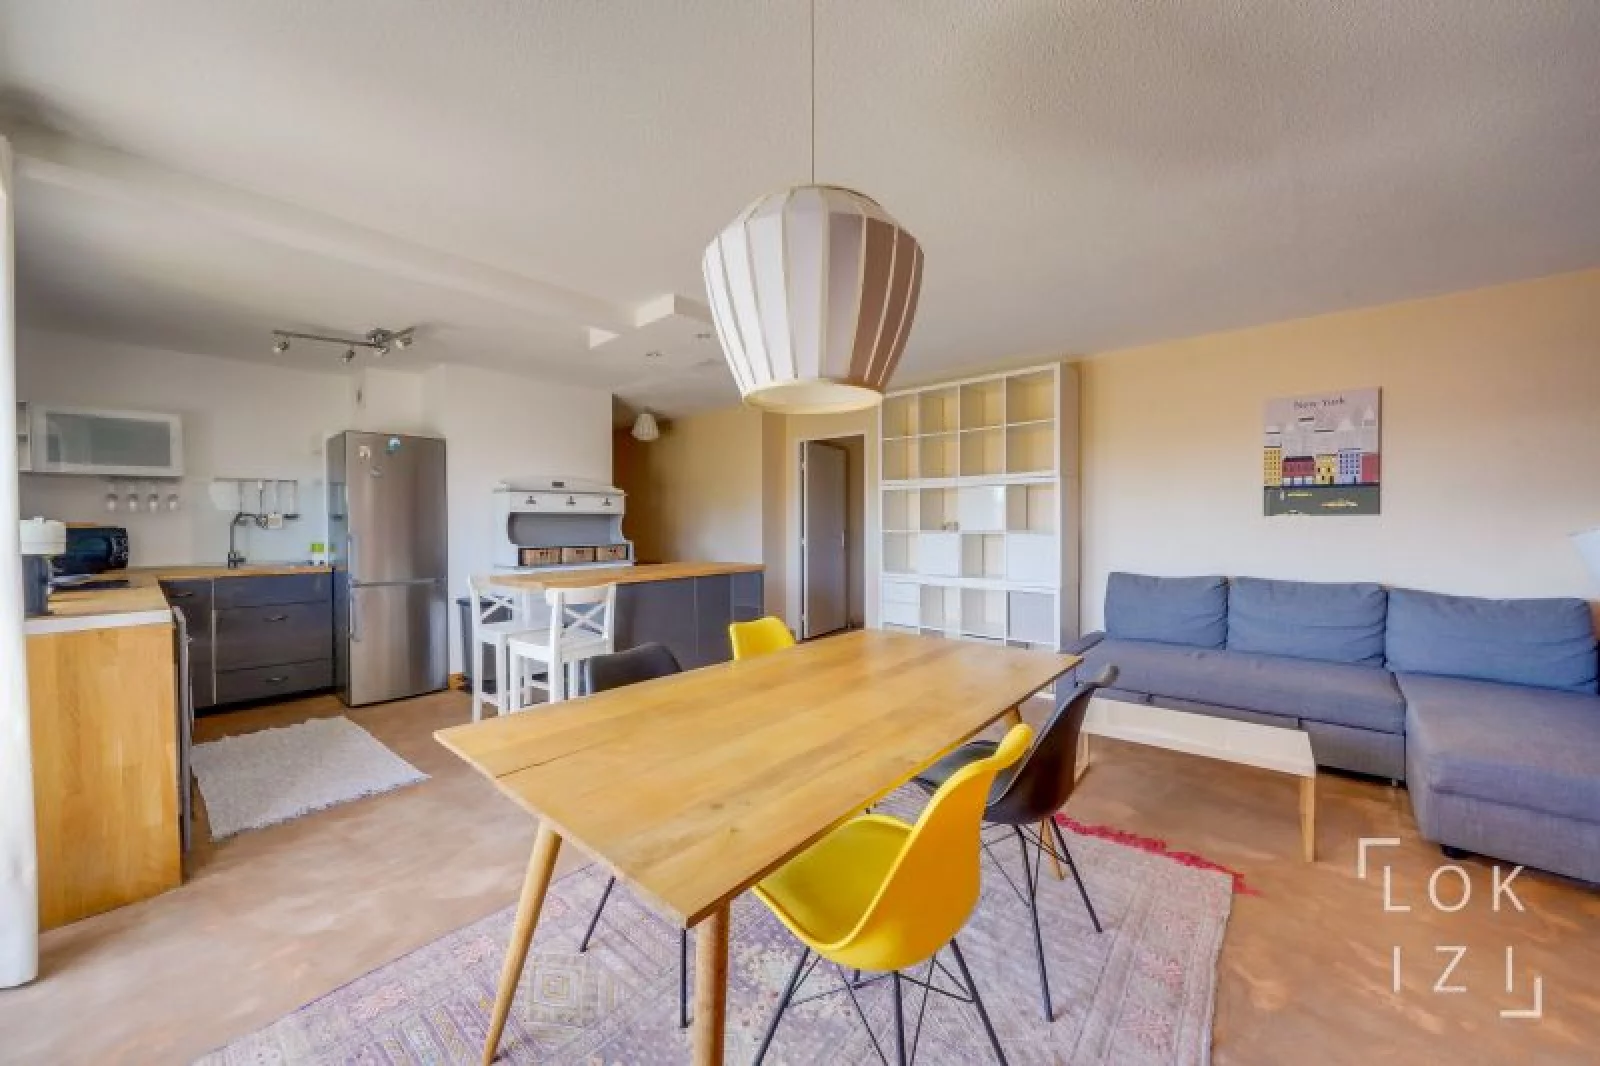 Location appartement meublé 3 pièces 69 m² (Bordeaux - Tivoli)